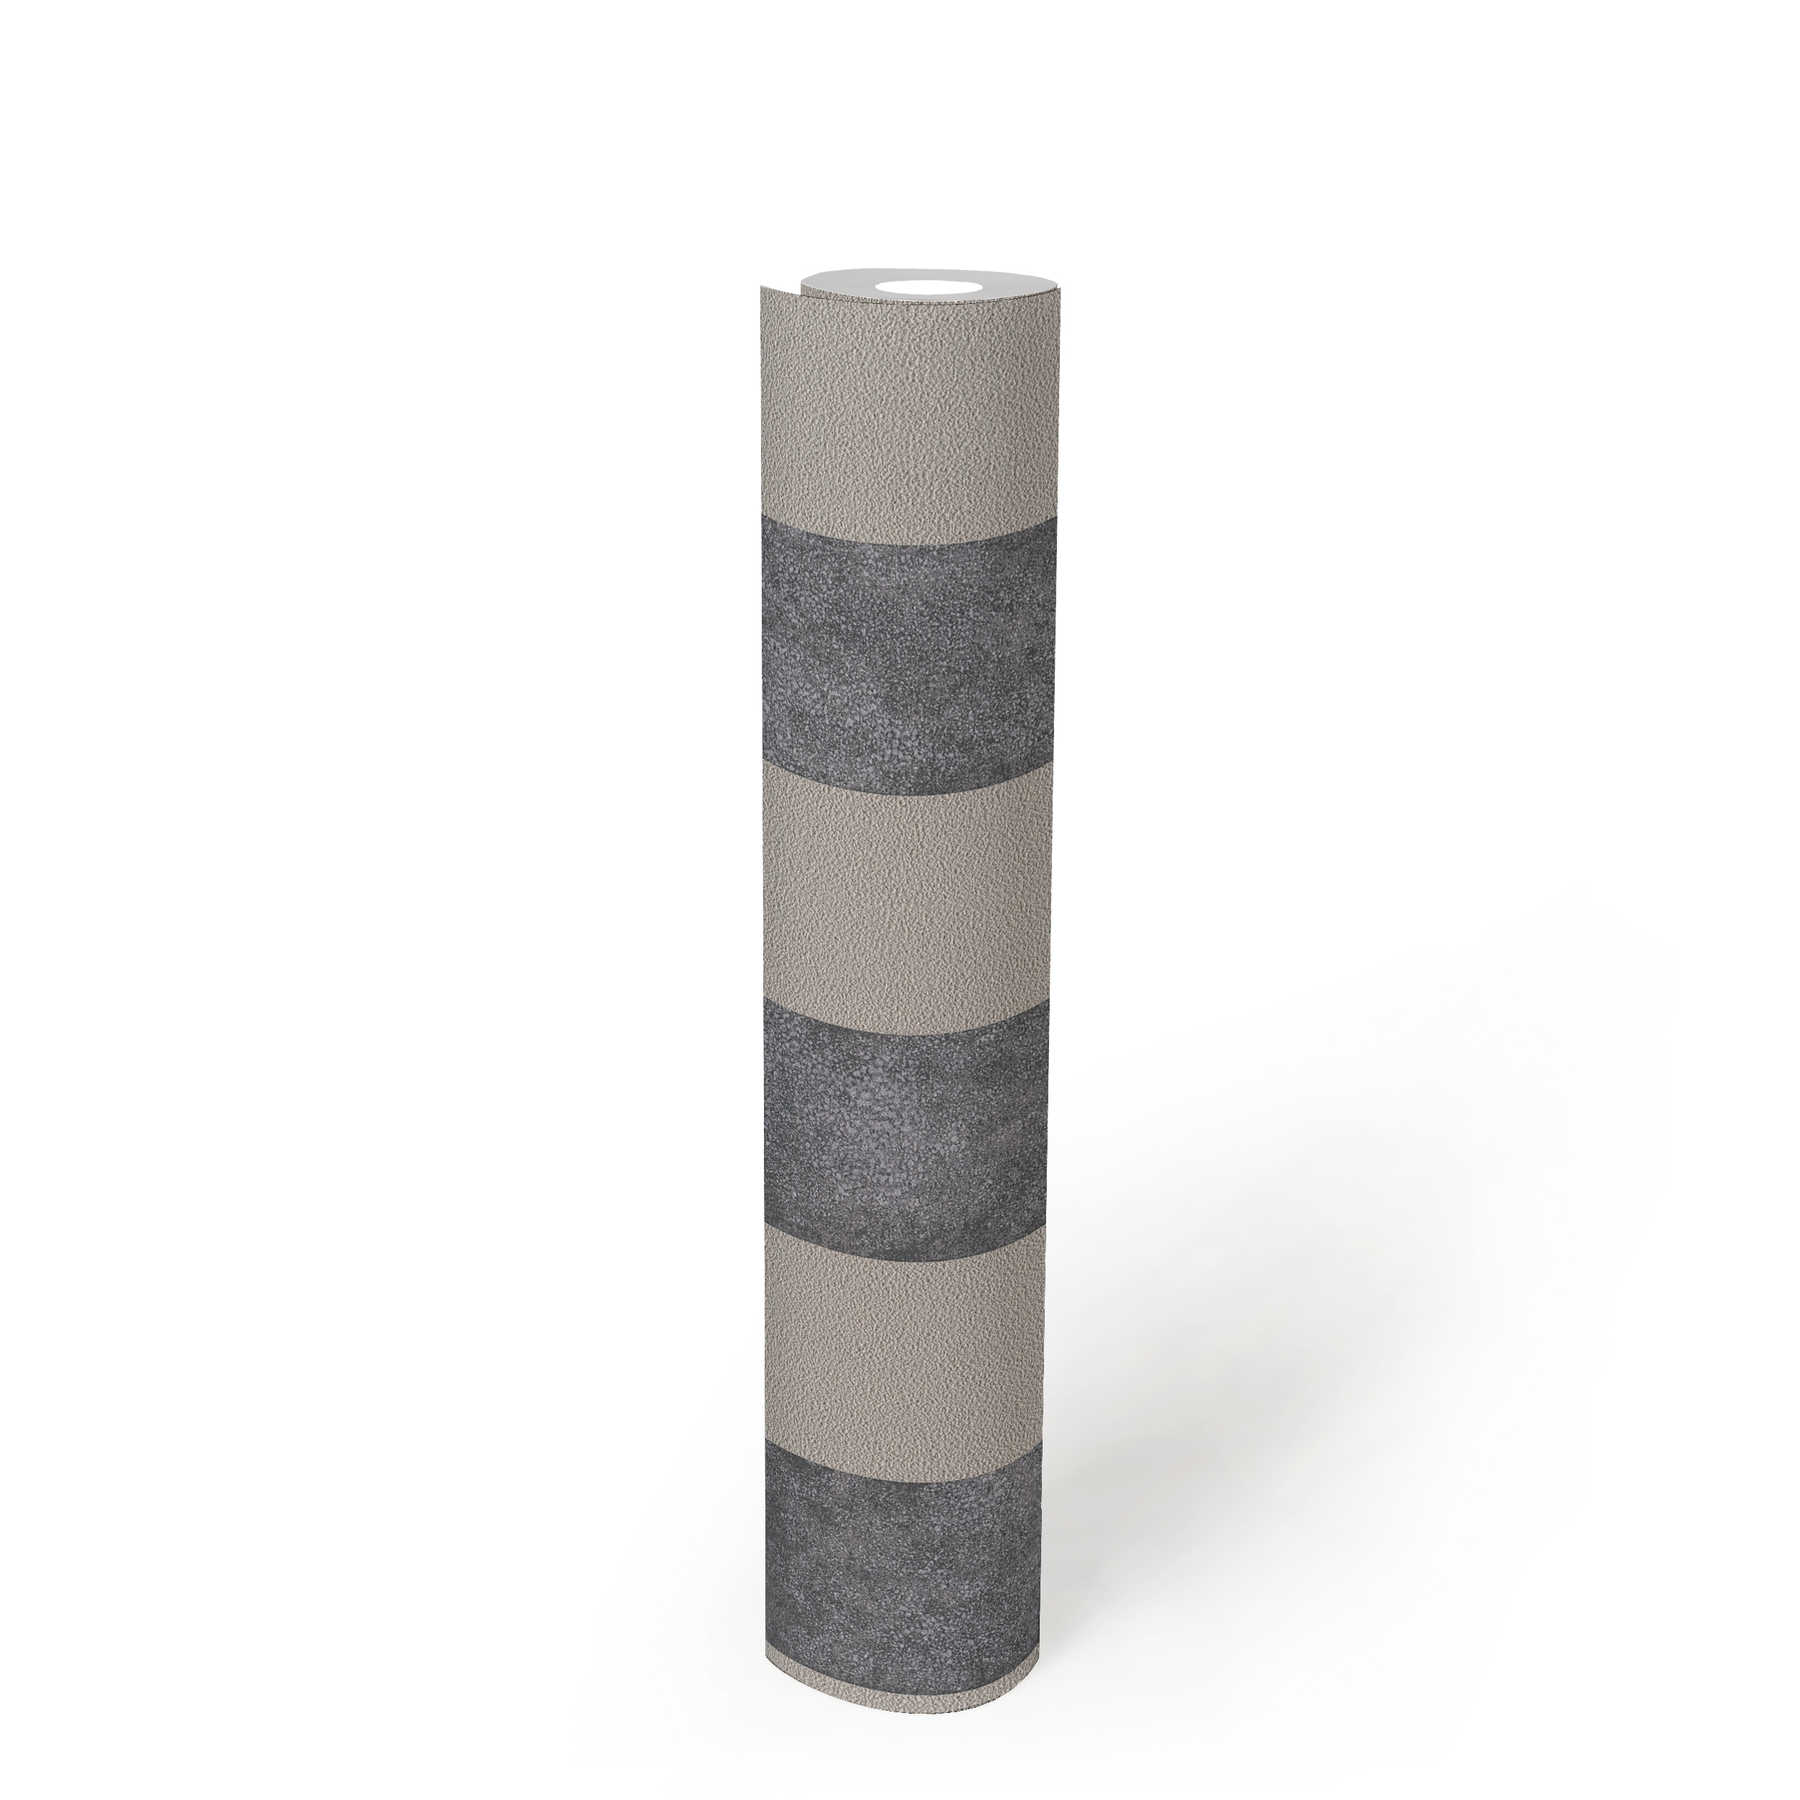             Papier peint à rayures en bloc avec motifs colorés et texturés - noir, gris, beige
        